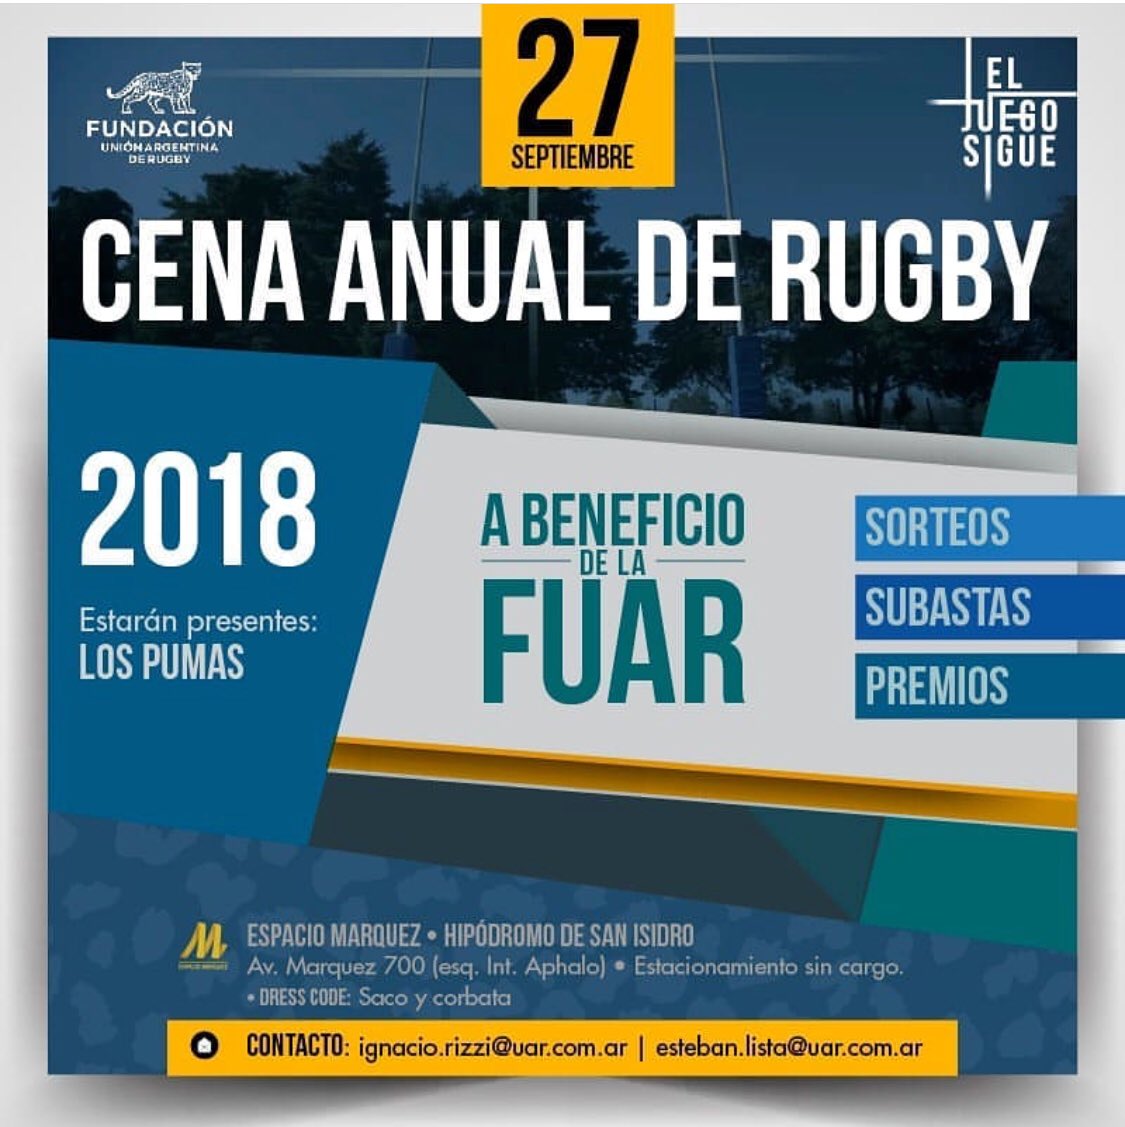 Este Jueves #pumpasxv a todo trapo!!! Cena Anual de Rugby @FundacionUAR 
Para Seguir Juntos ... #AbriendoCaminos 🏉 
#rugbyinclusivo
#vamospormas 
#mixedabilityrugbyargentina